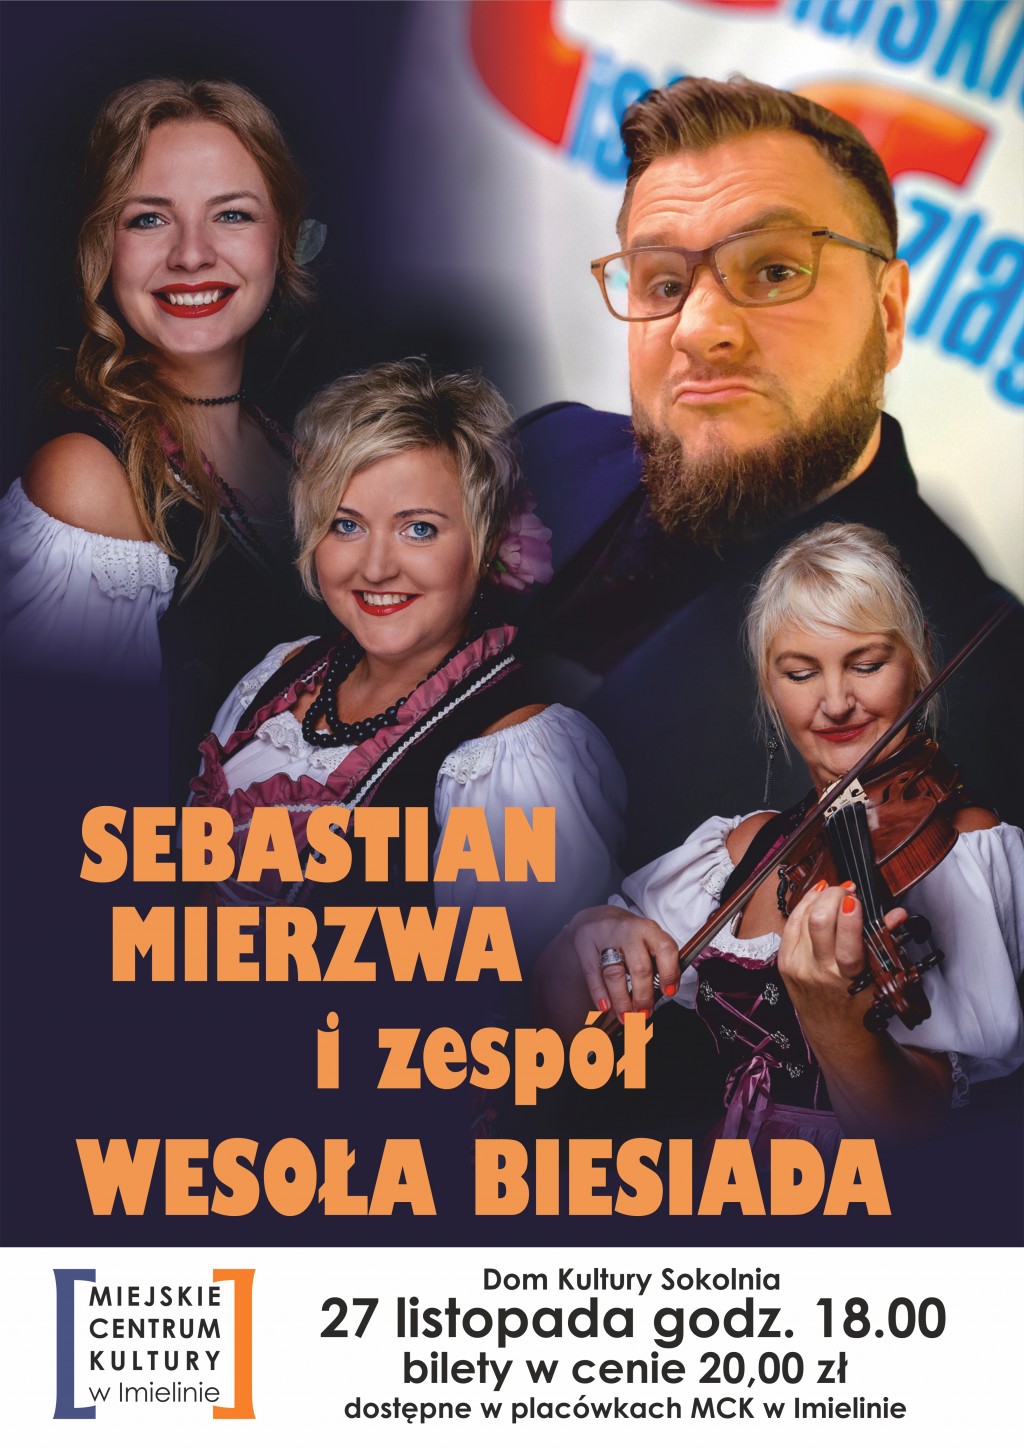 27 listopada (niedziela) – godz. 18:00 - Dom Kultury „Sokolnia” –Sebastian Mierzwa i zespół Wesoła Biesiada -  Biesiada Śląska